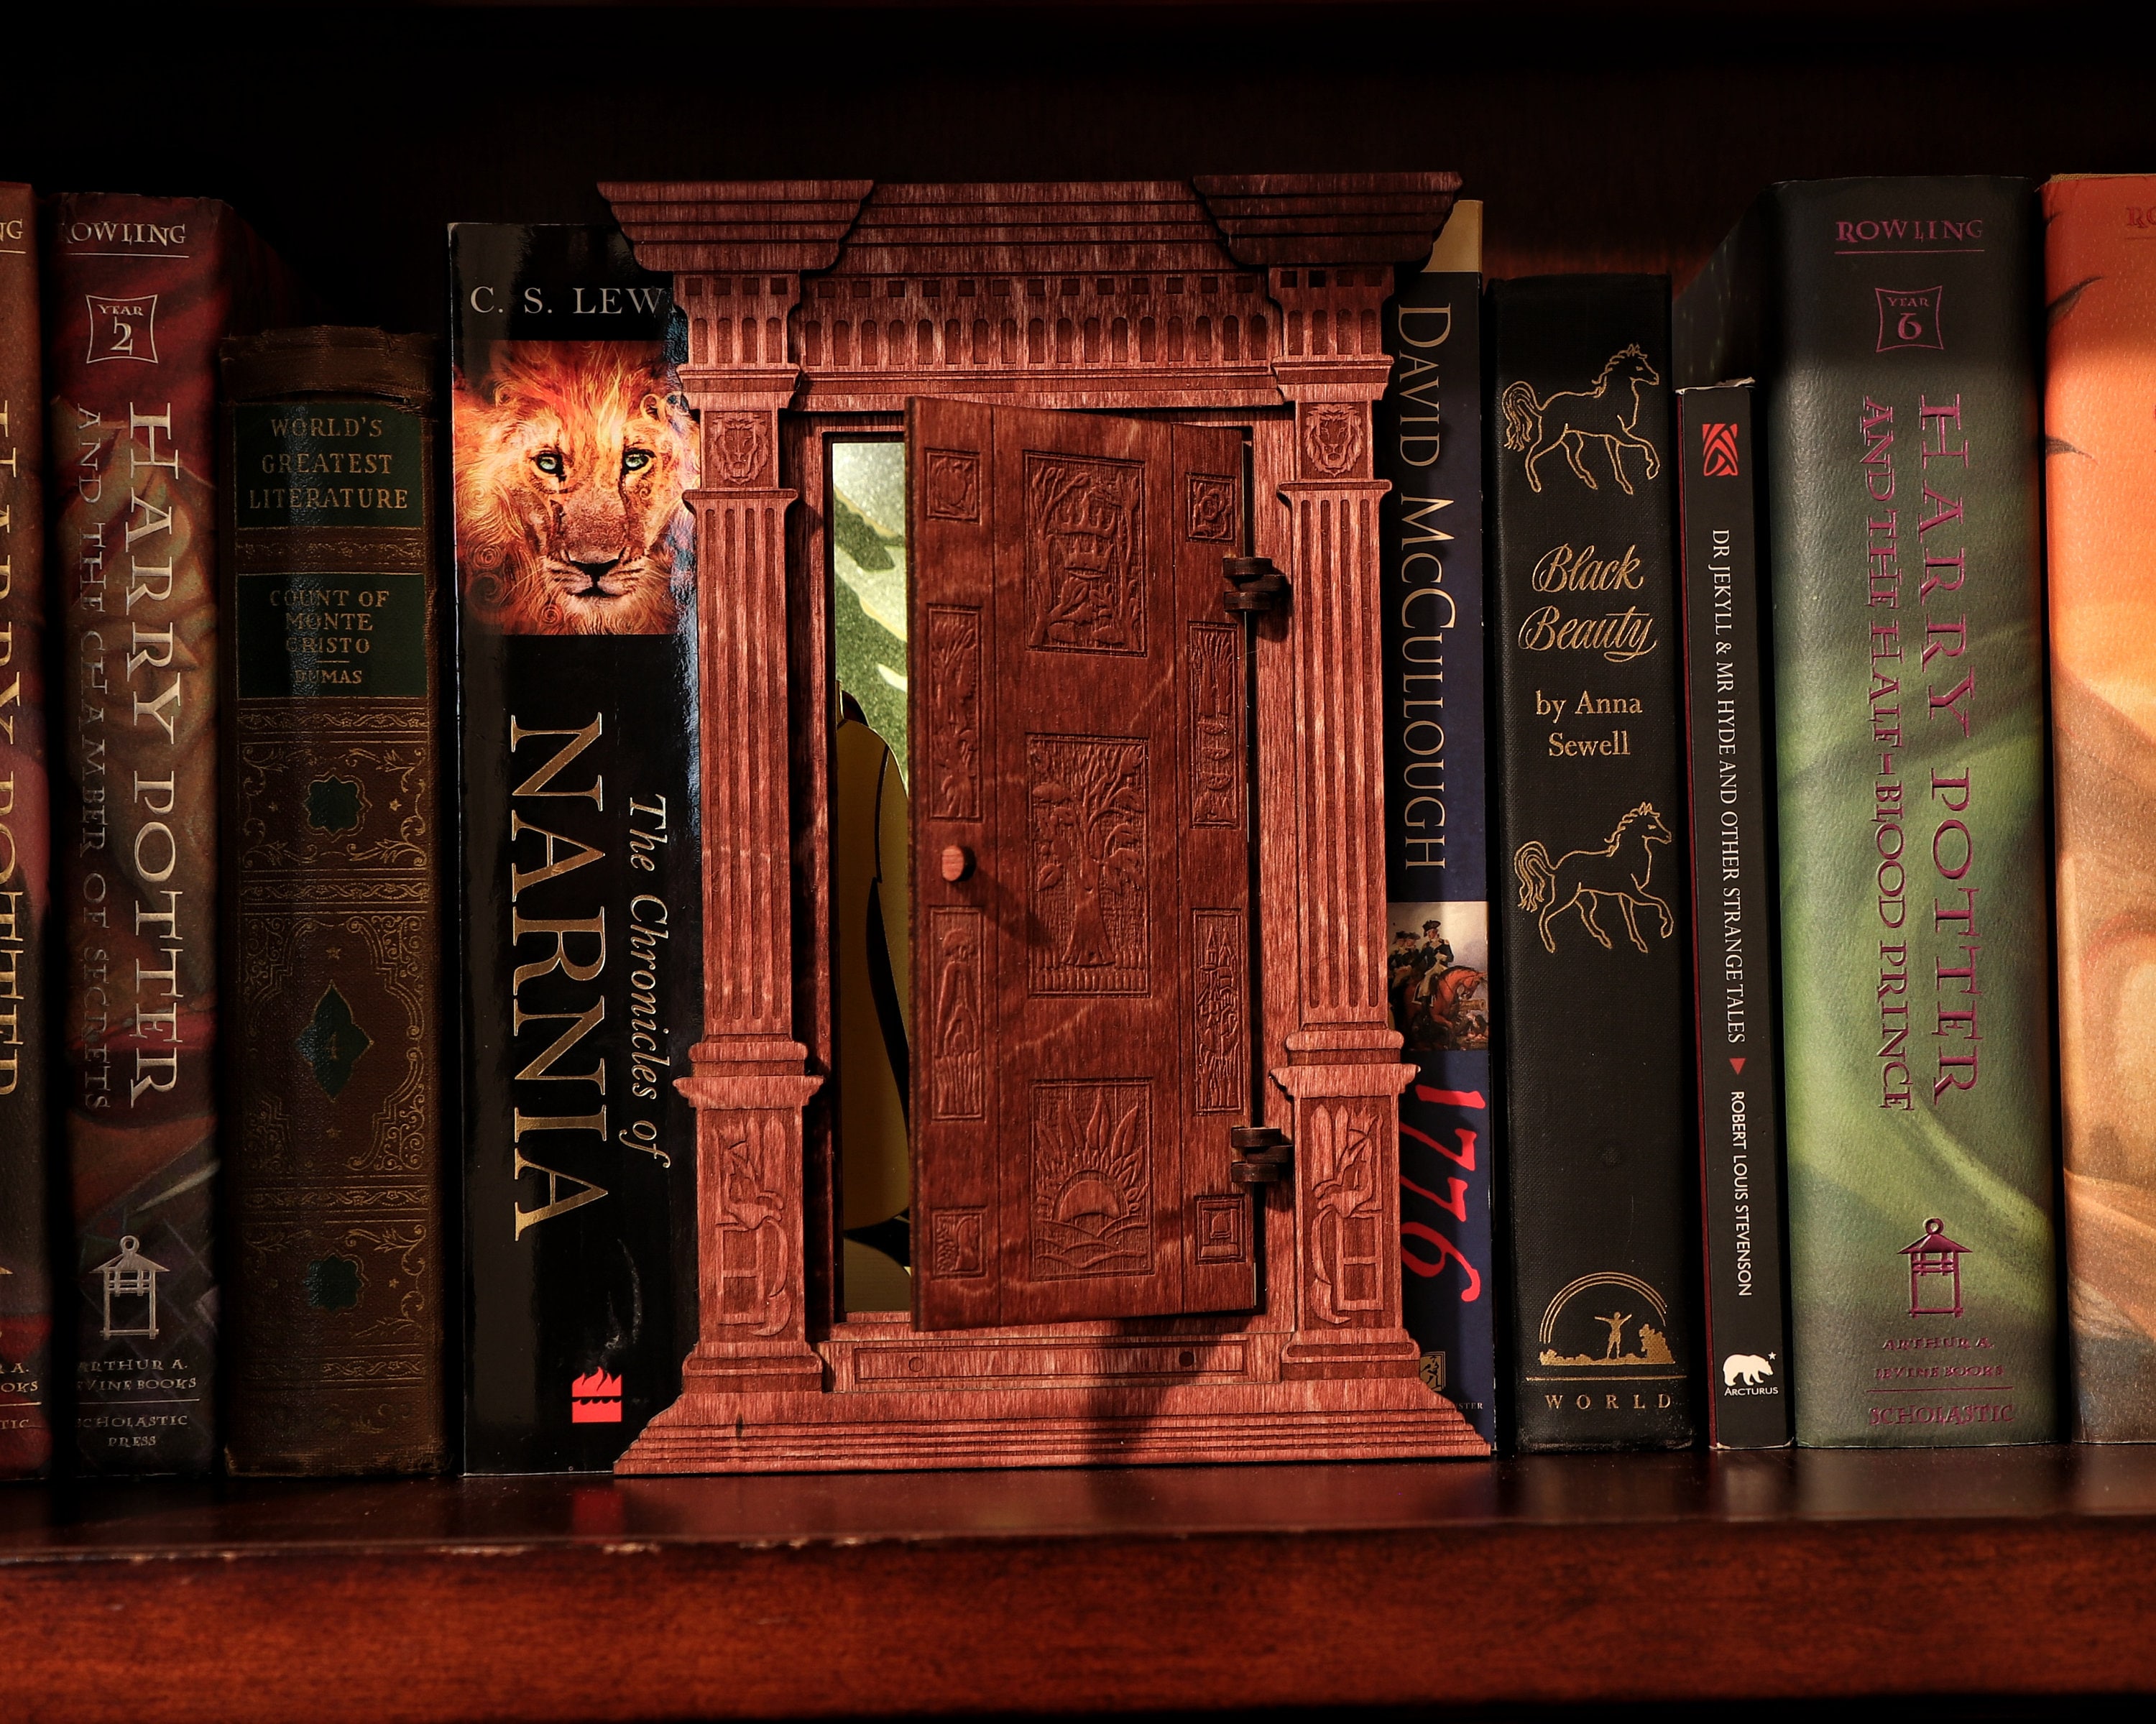 Book Nook Shelf Insert Quai 9 3/4 Hogwarts Express Harry Potter Collector 